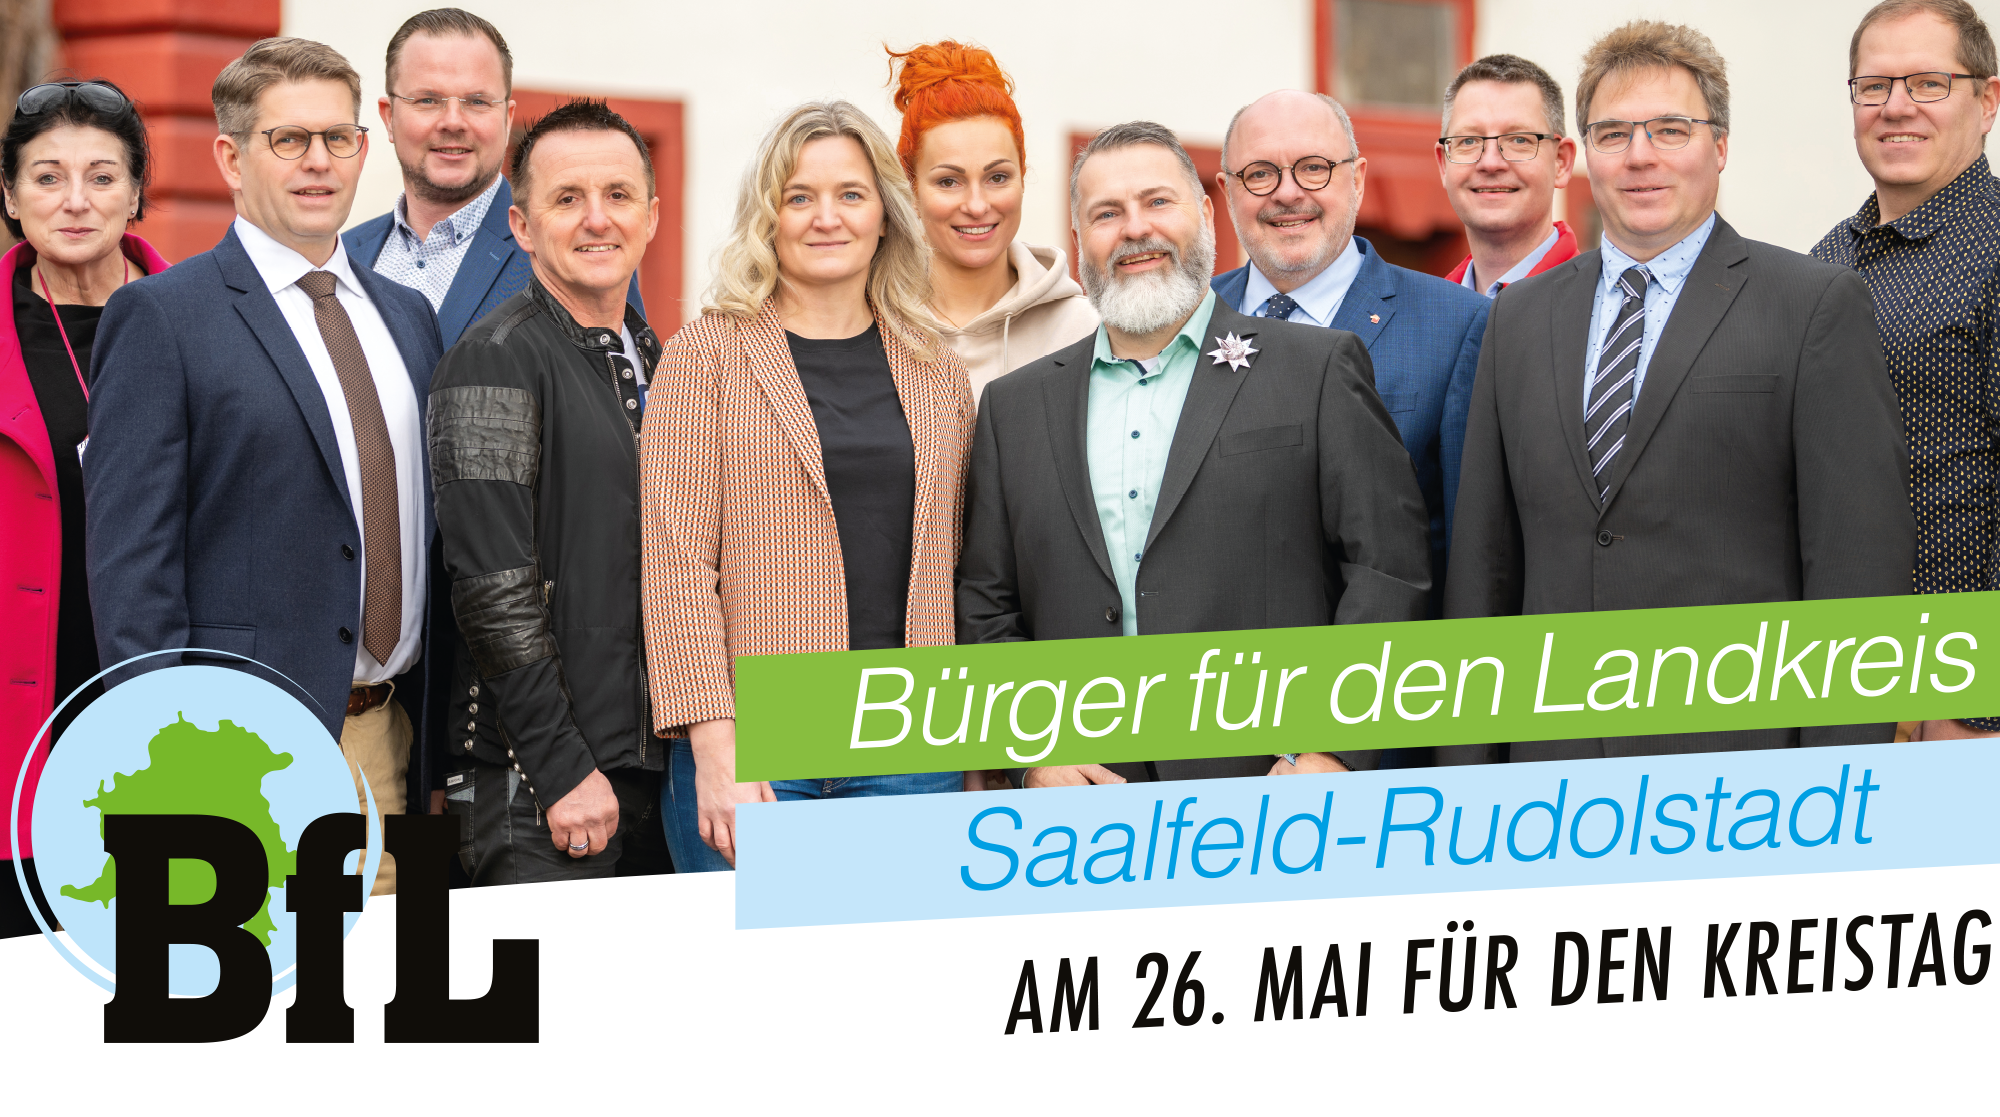 BfL - Bürger für den Landkreis Saalfeld-Rudolstadt